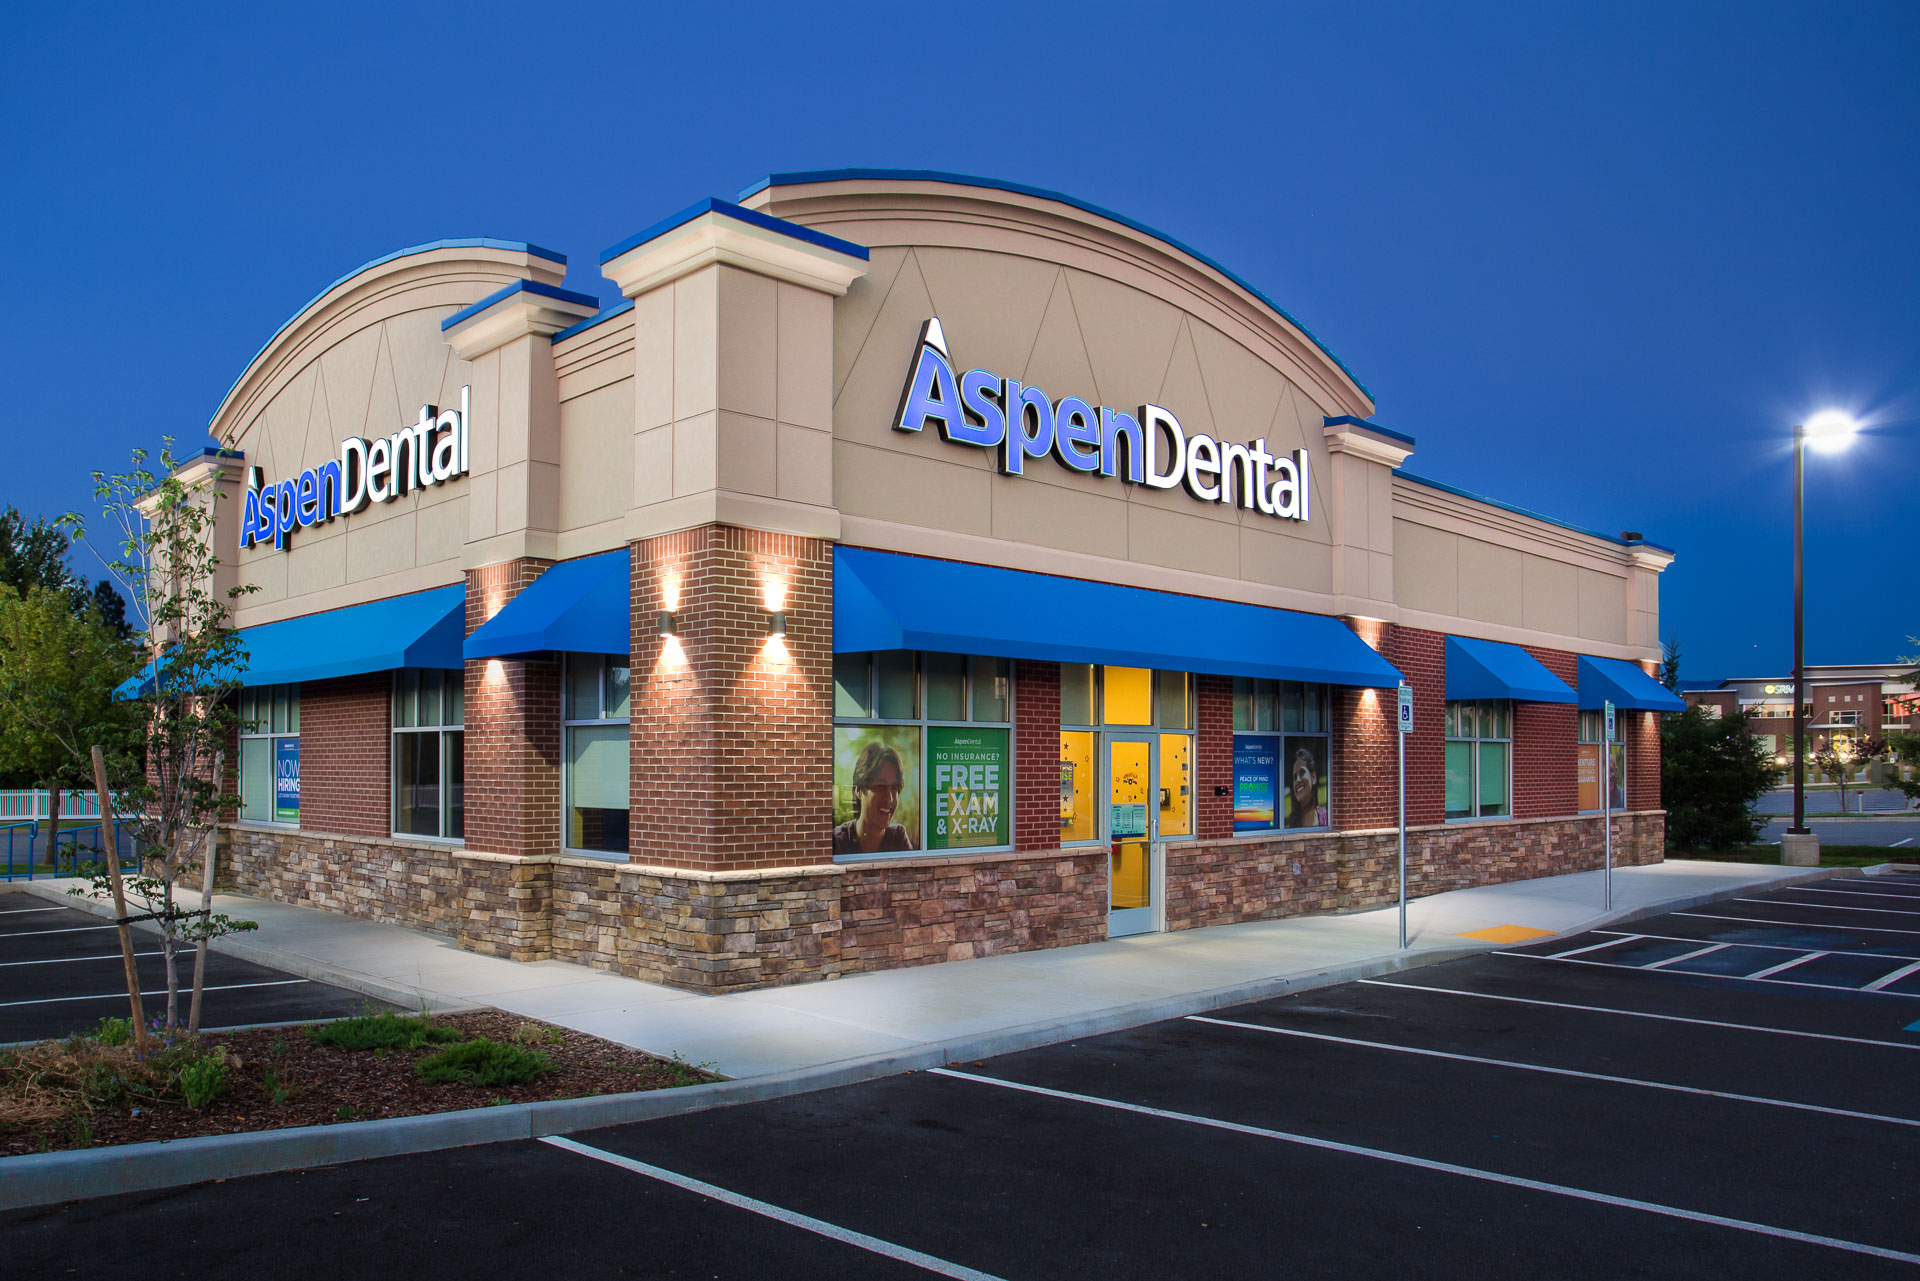 Aspen Dental Spokane Valley - RL Miller Photography LLC